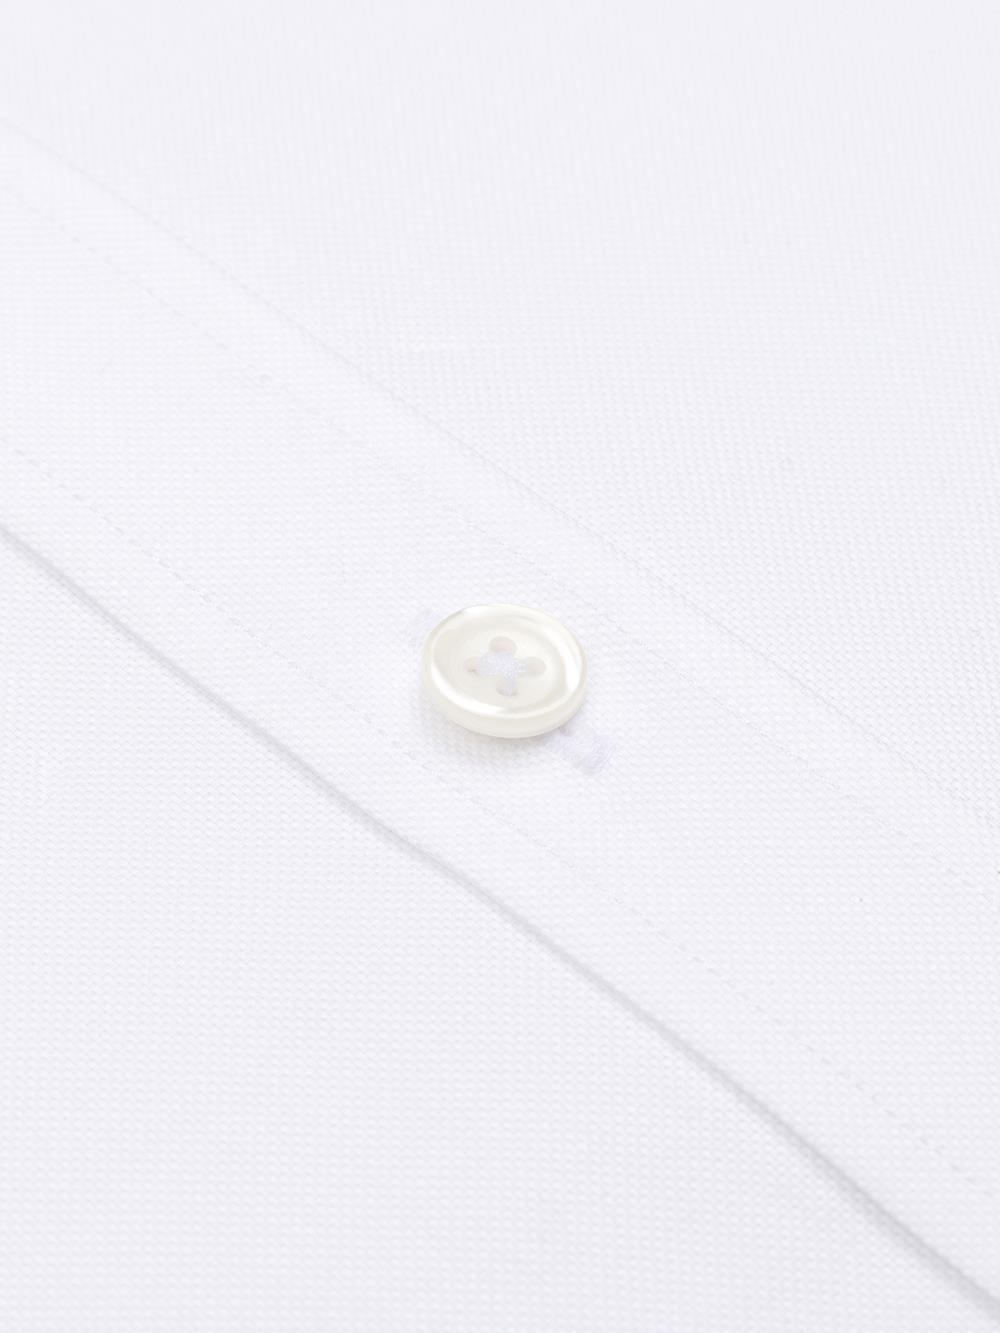 Camicia oxford bianca - Colletto abbottonato